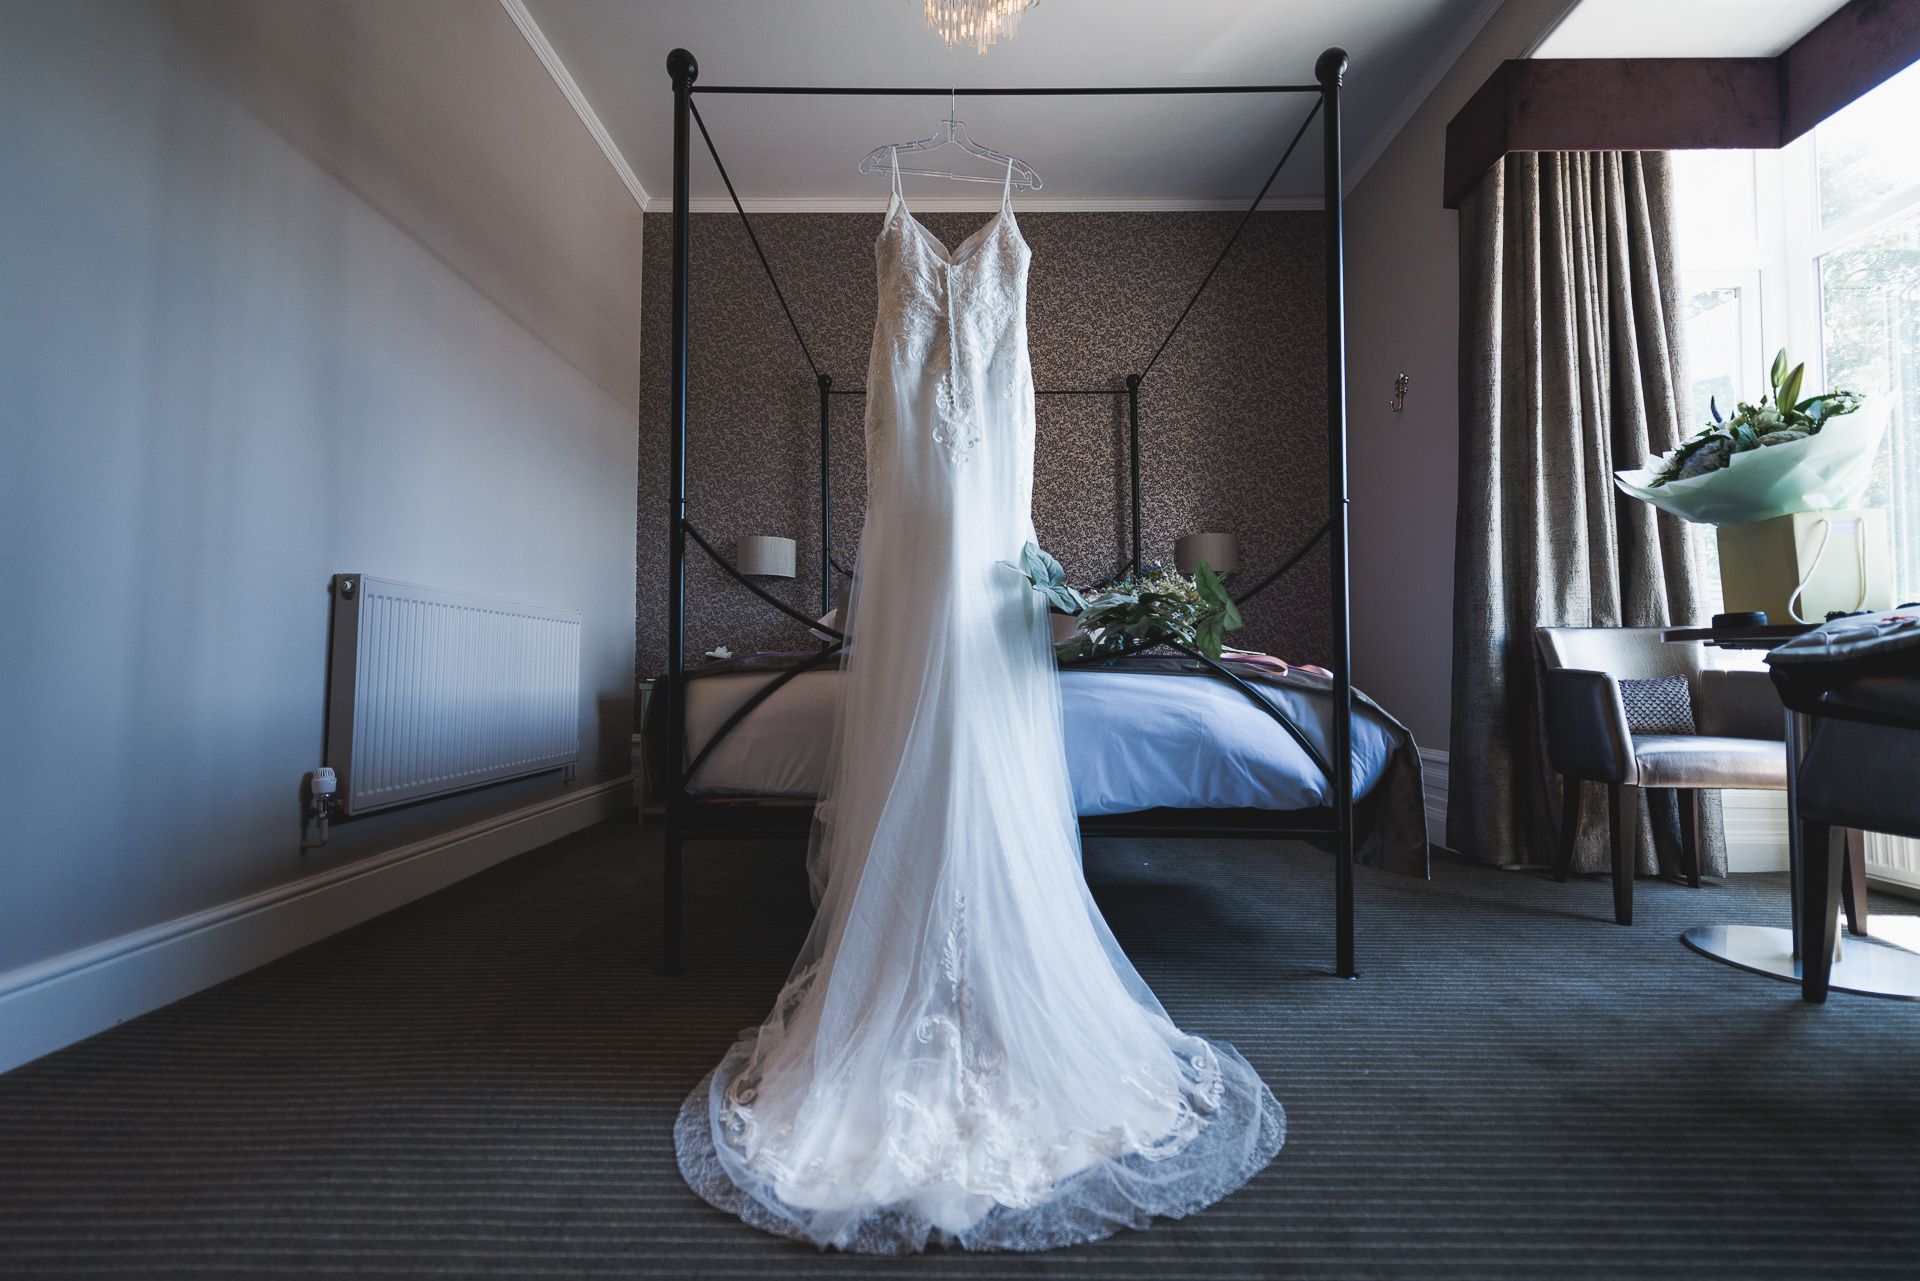 the birde's wedding dress is hanging in the bedroom